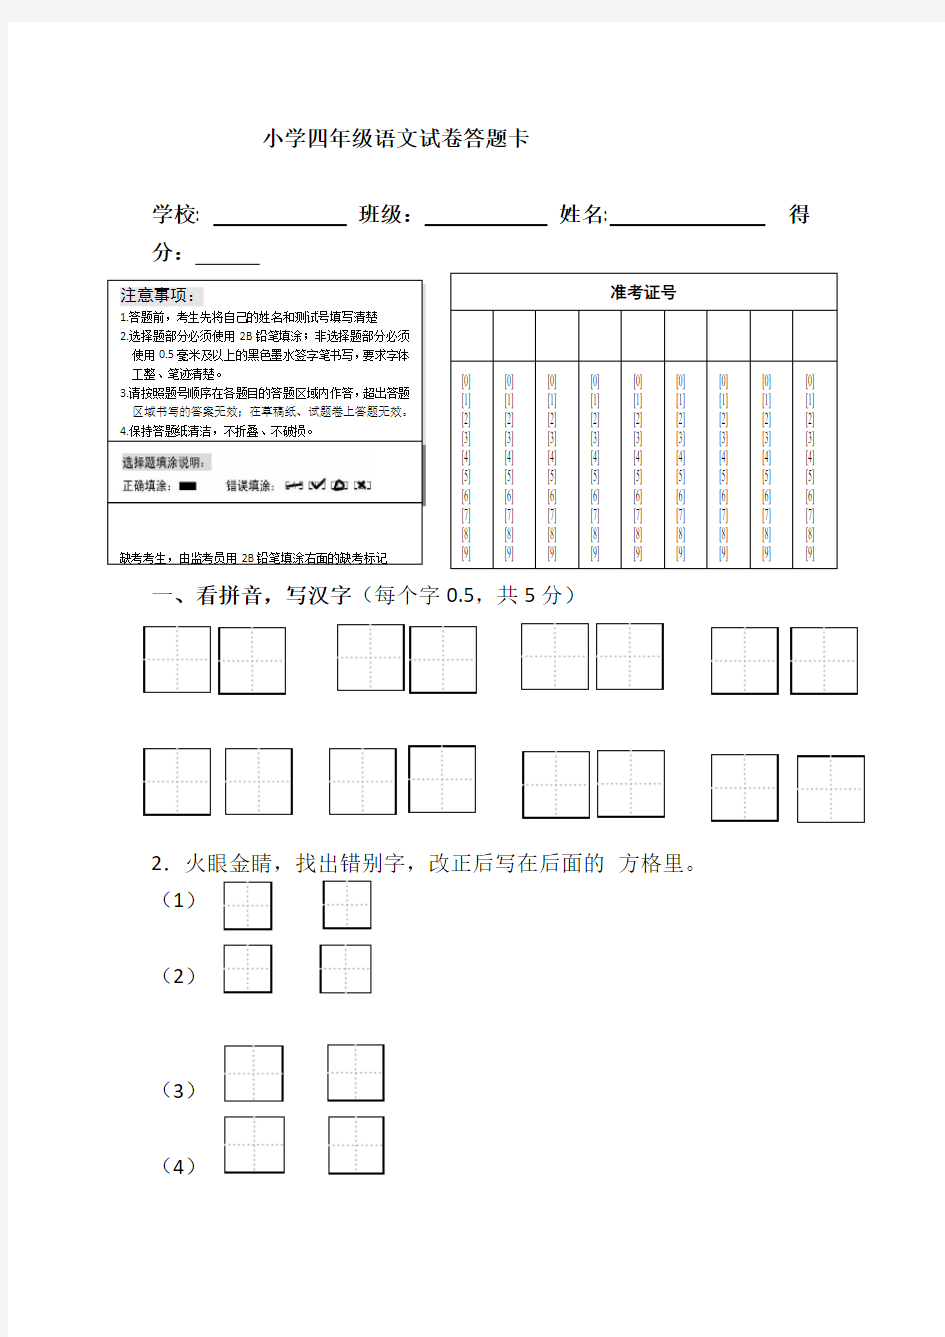 四年级语文试卷答题卡及答案(1)